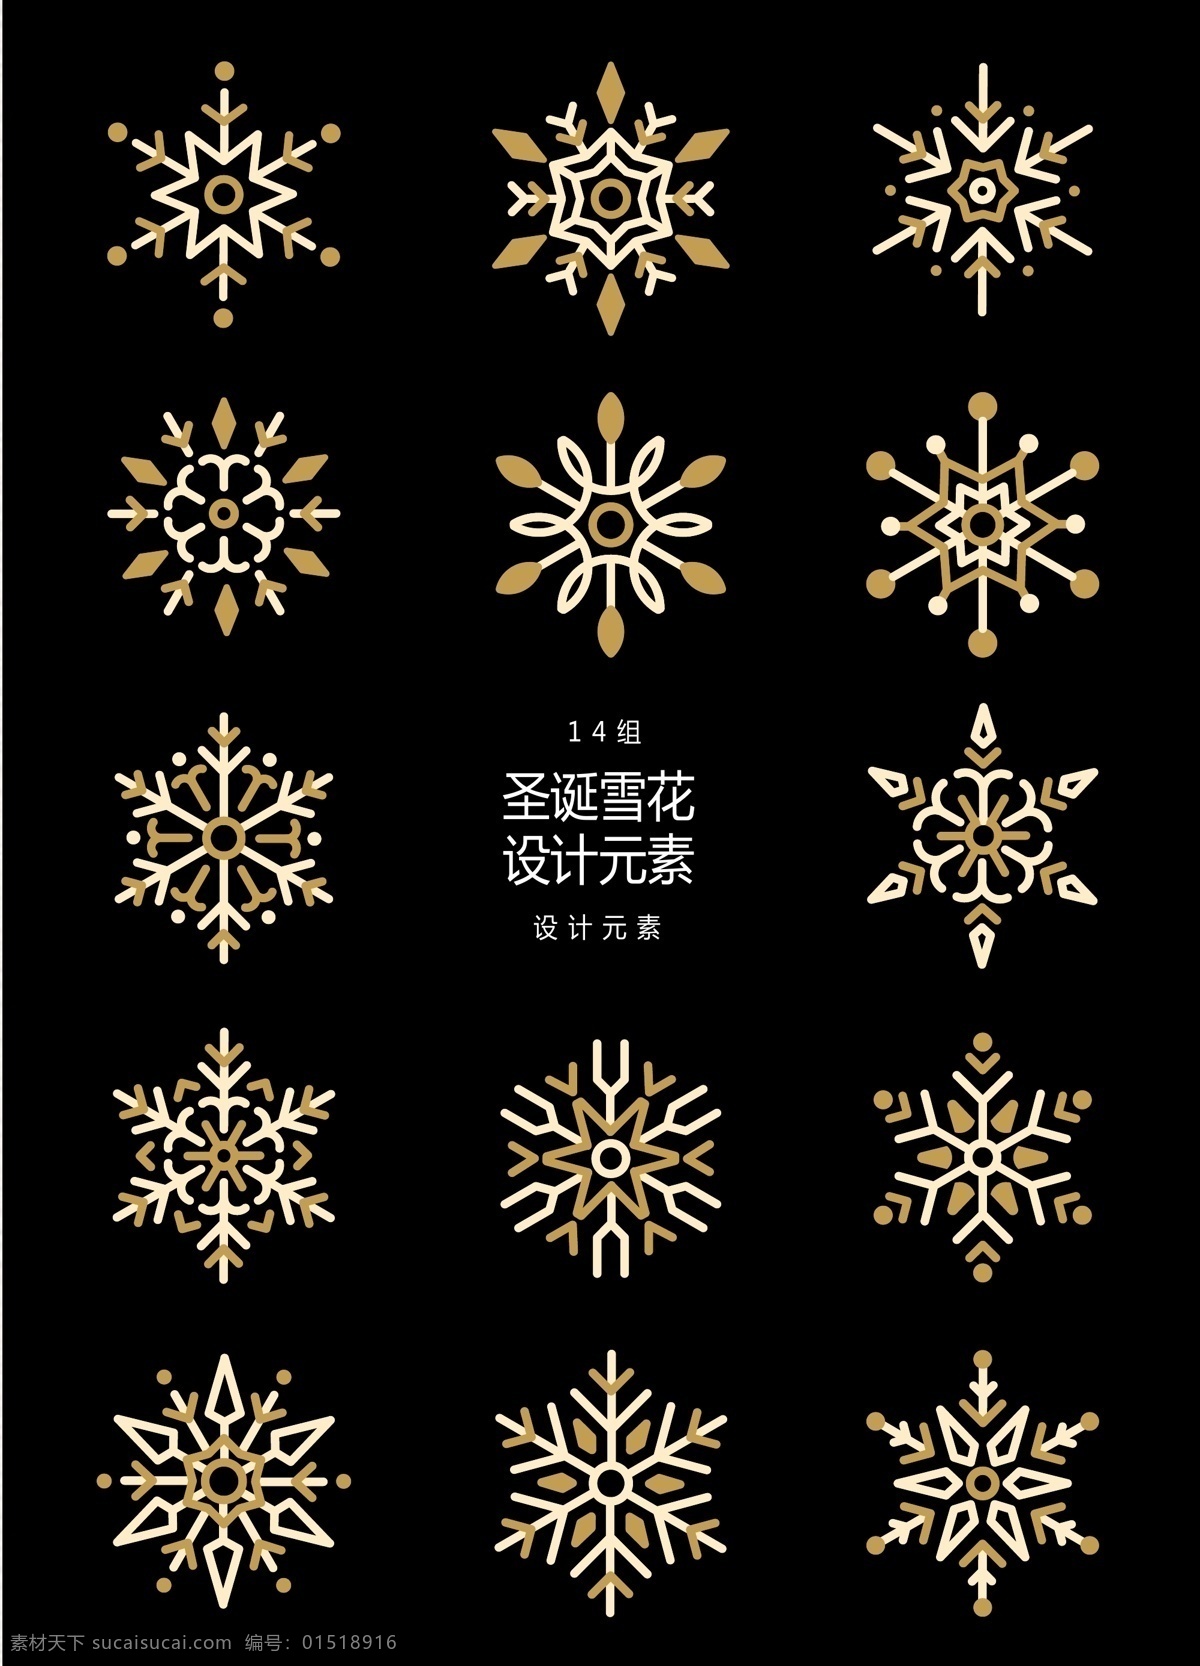 抽象 圣诞 雪花 元素 设计元素 圣诞节 冬天 冬季 雪花图案 金色雪花 圣诞雪花